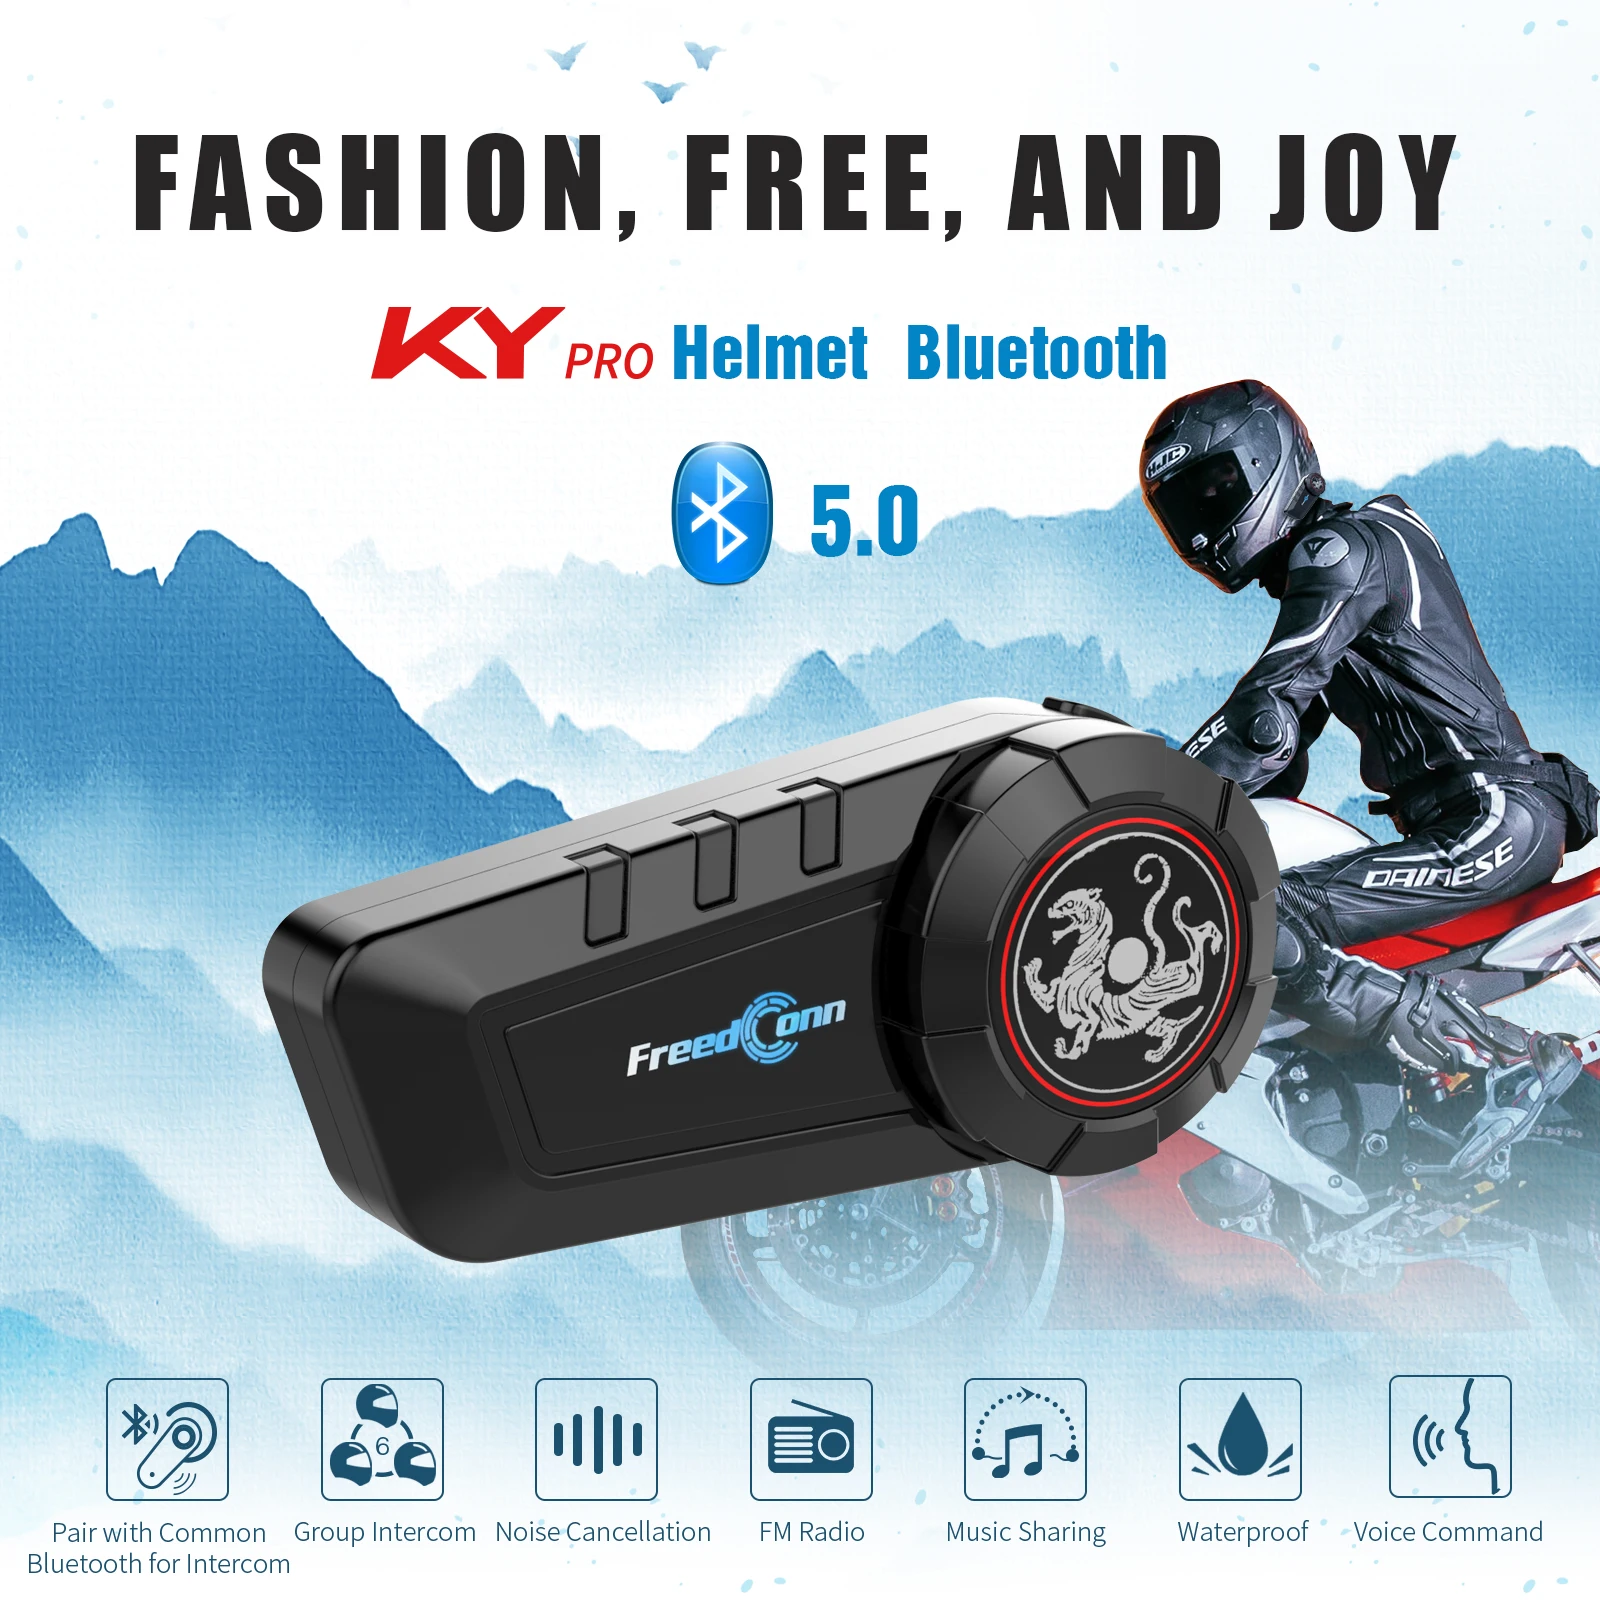 

FreedConn KY Pro мотоциклетный шлем, домофон, гарнитура, 6 всадников, группа, водонепроницаемый домофон, Bluetooth 5,0, музыкальный обмен, fm-радио 15 дней бе...